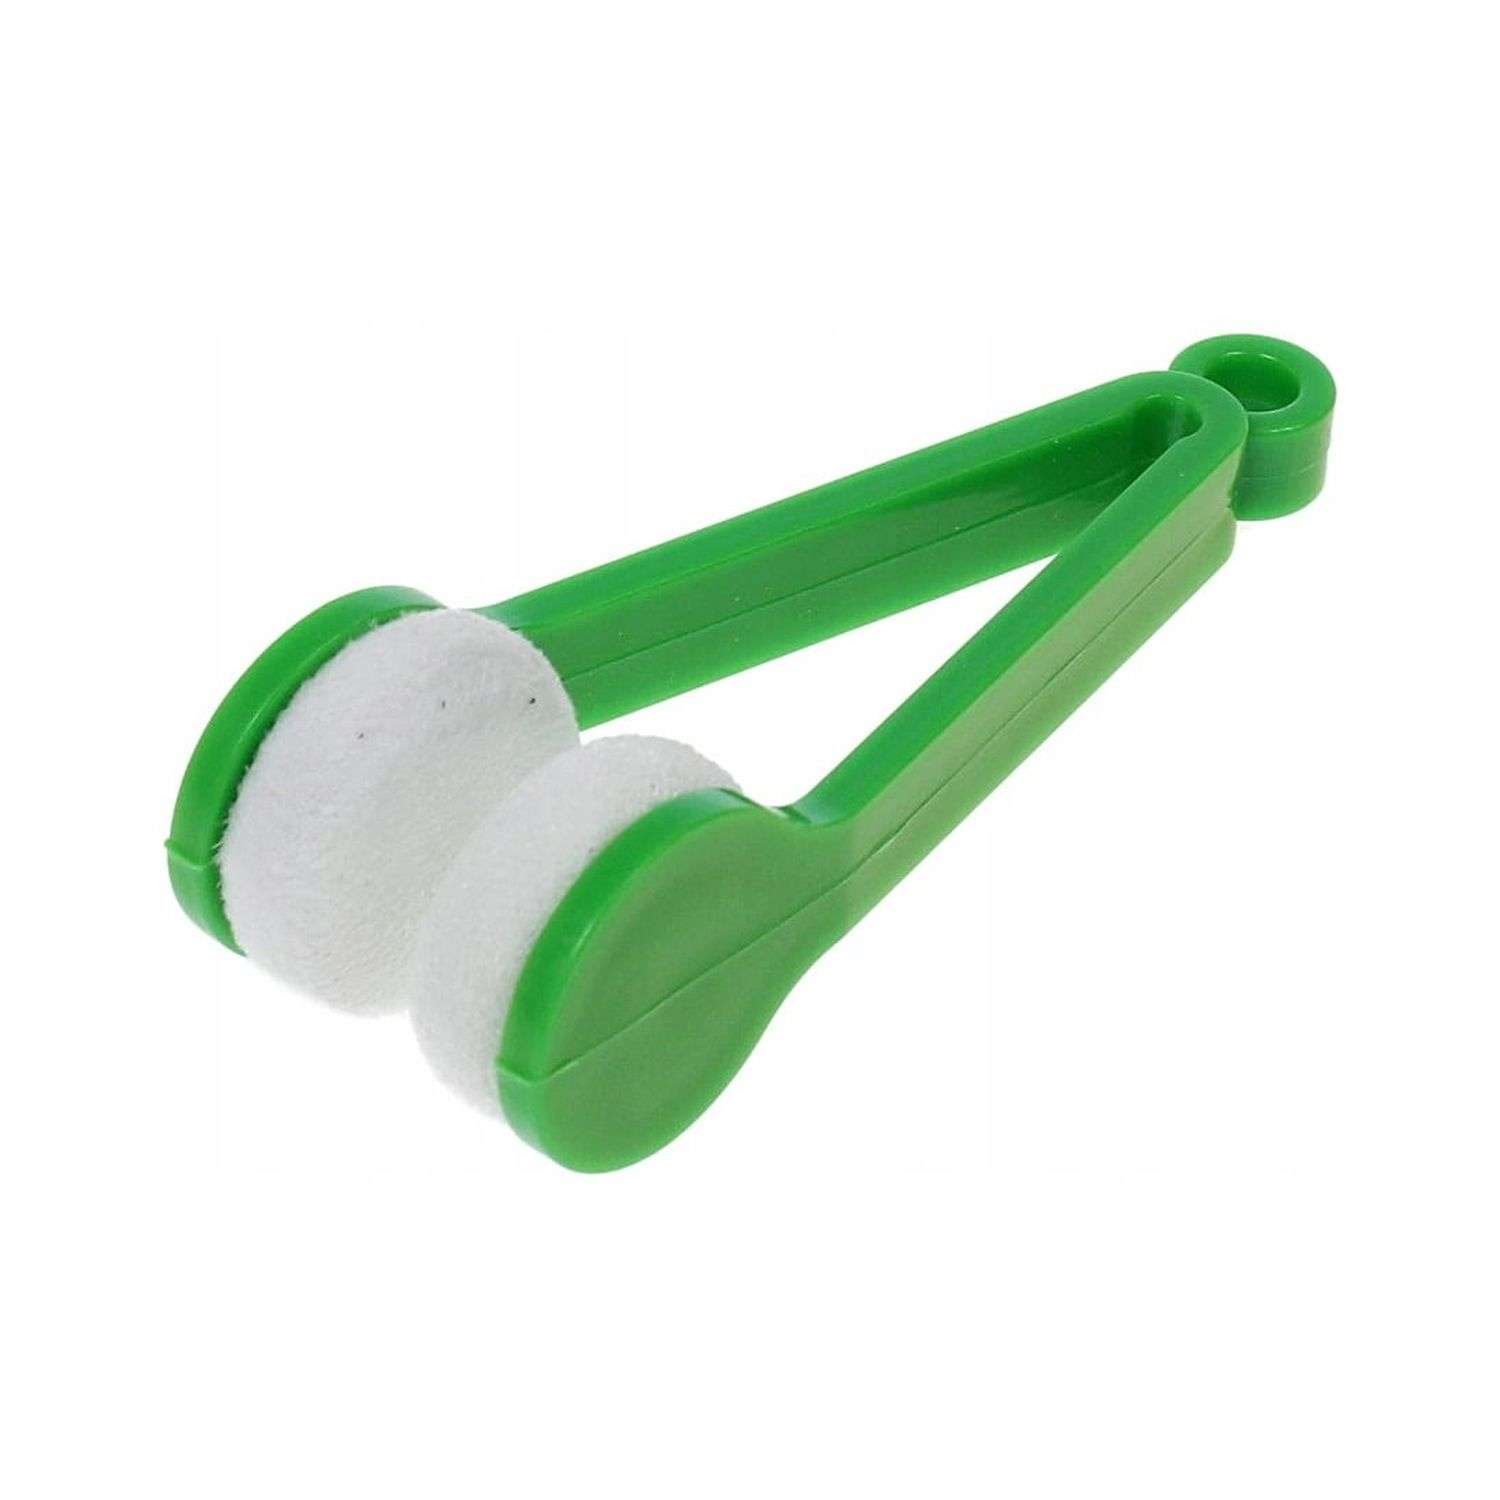 Прибор для чистки очков Uniglodis зеленый - фото 1